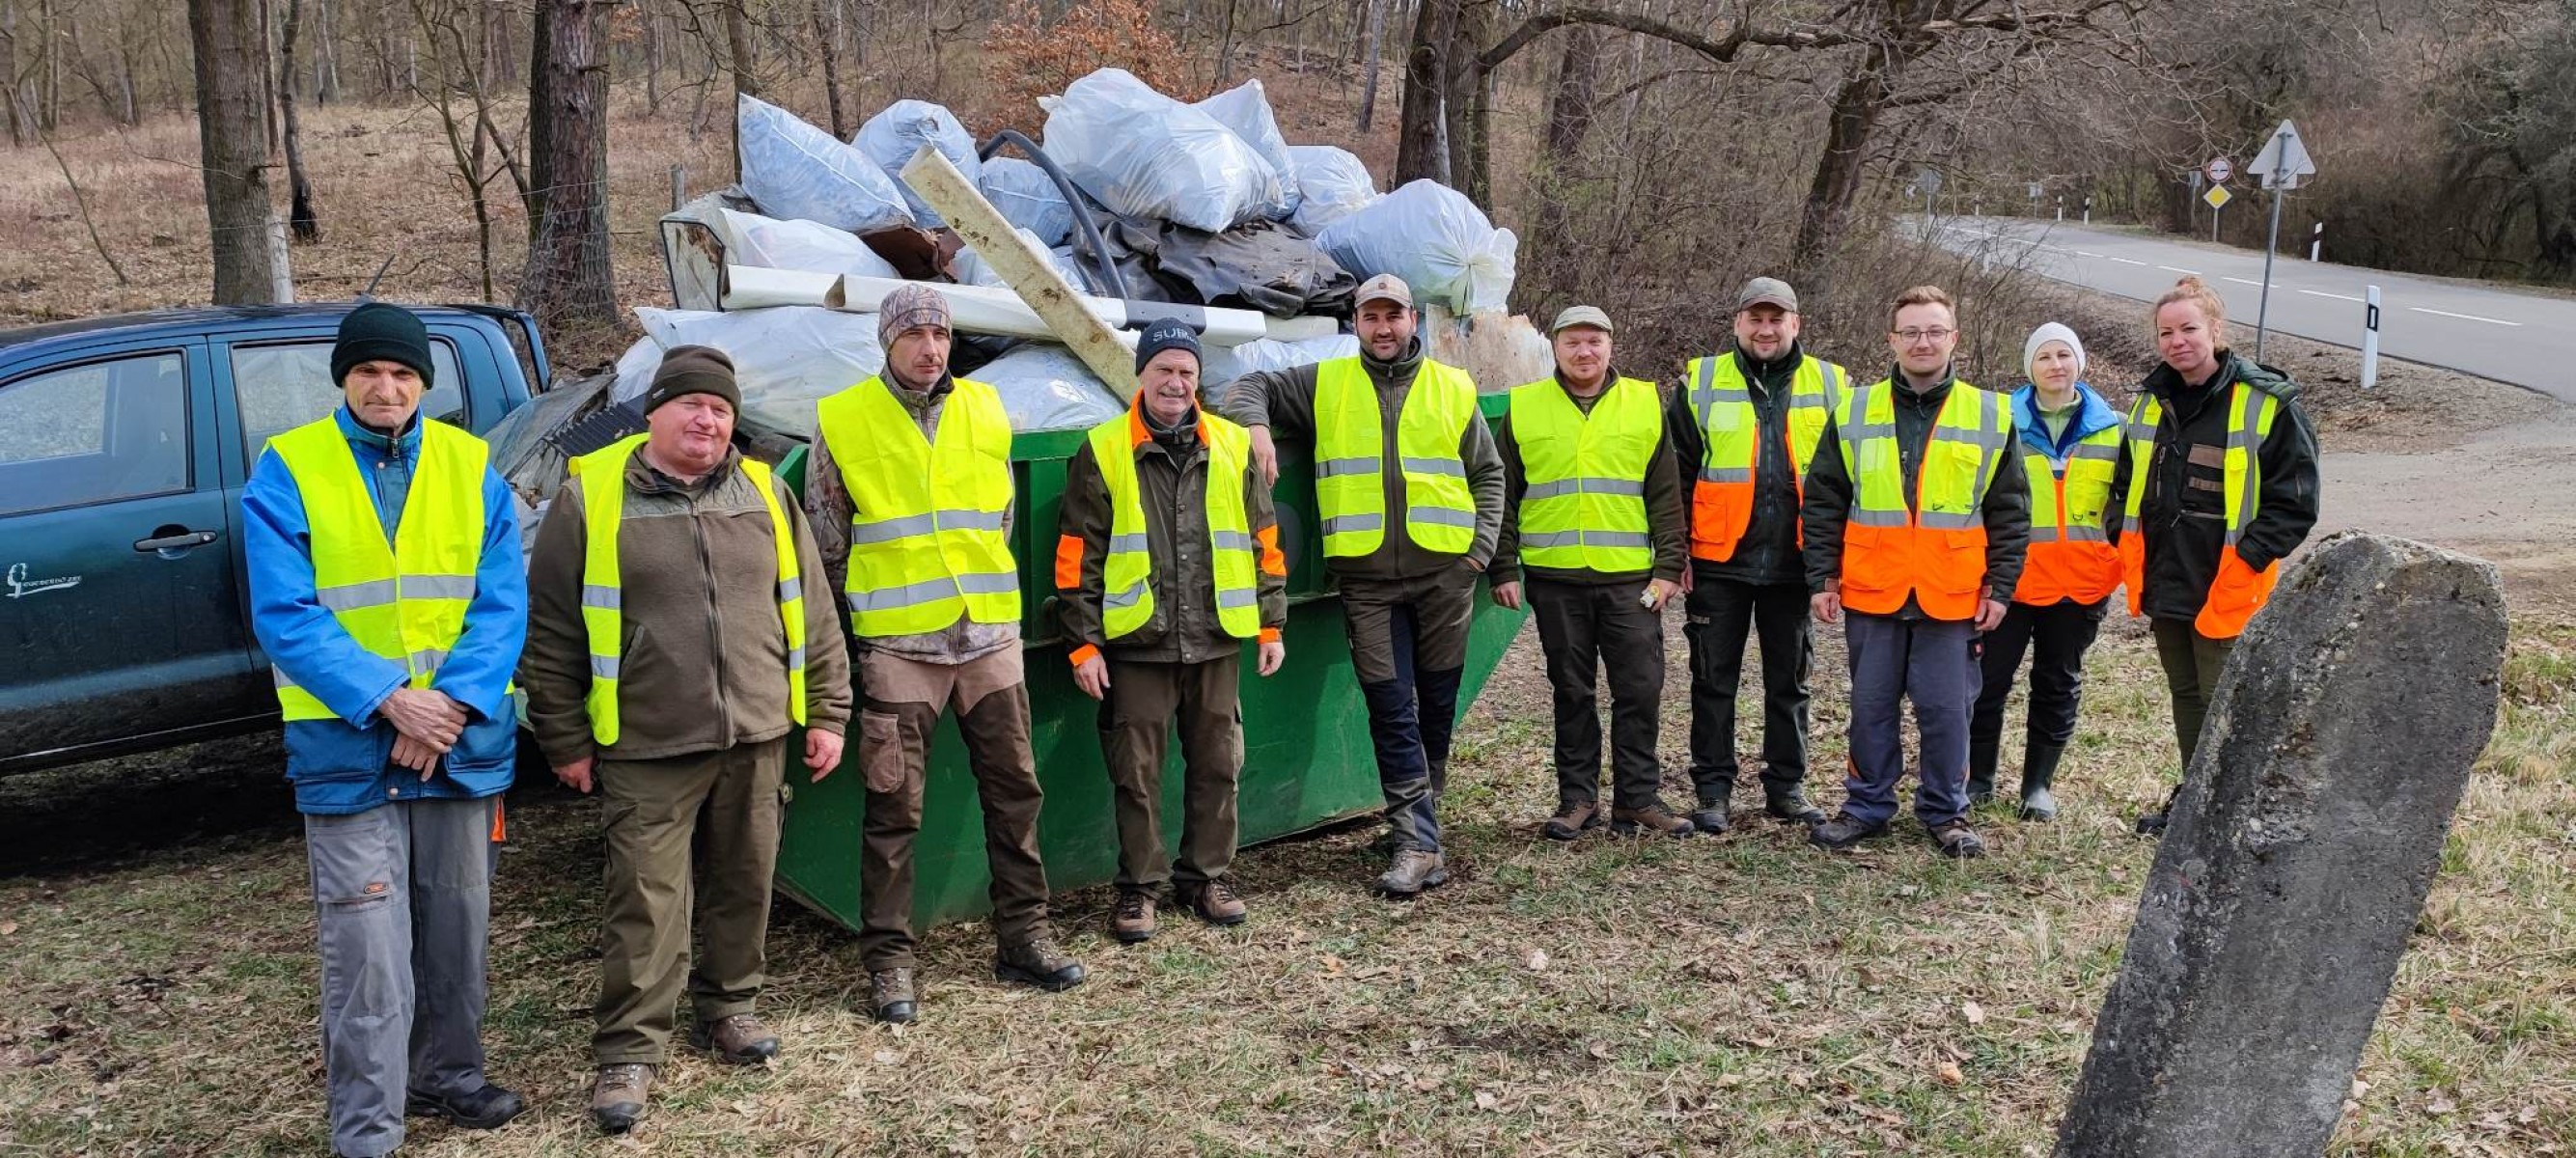 Hulladék hulladék hátán – Elindult a tavaszi nagytakarítás az Egererdőnél